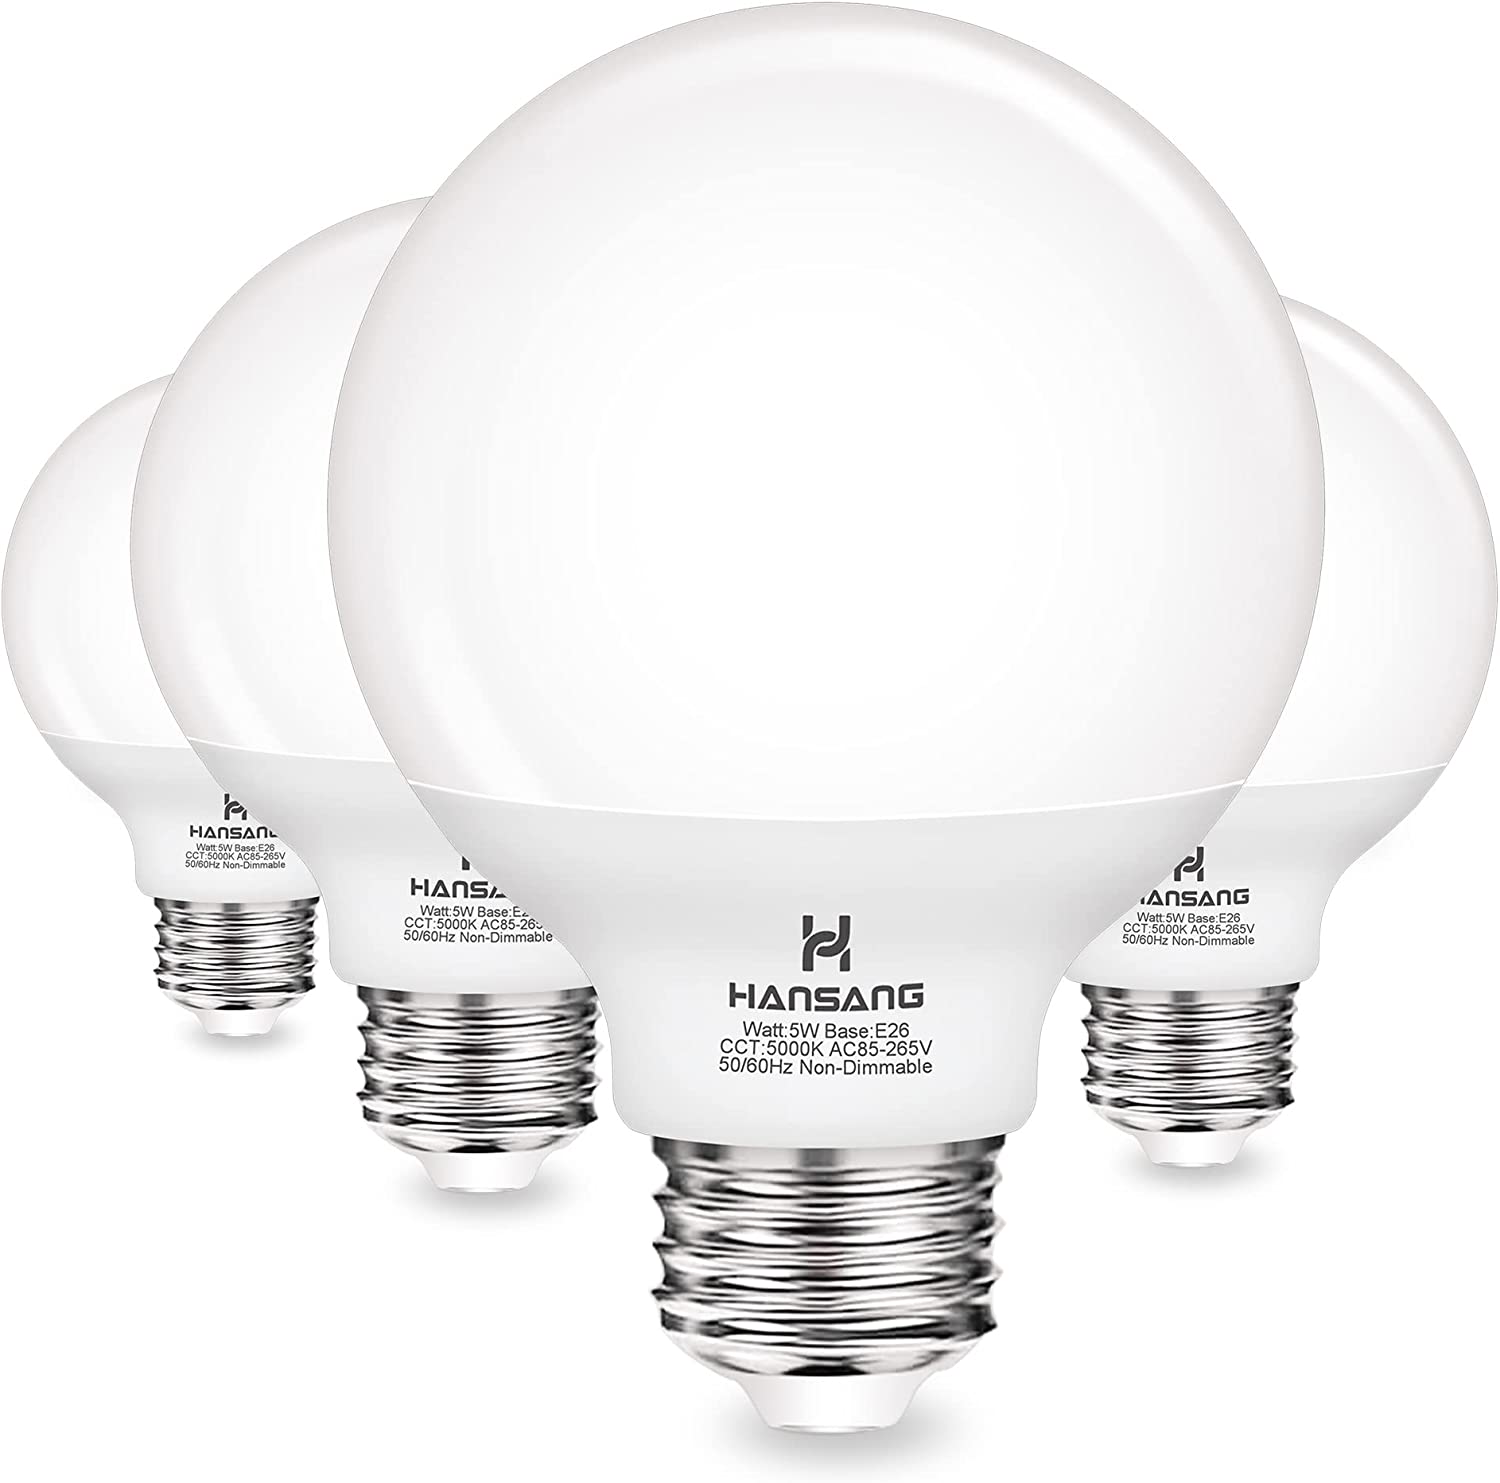 Hansang G25 LED Globe Light Bulbs, 60W Equivalent, [...]